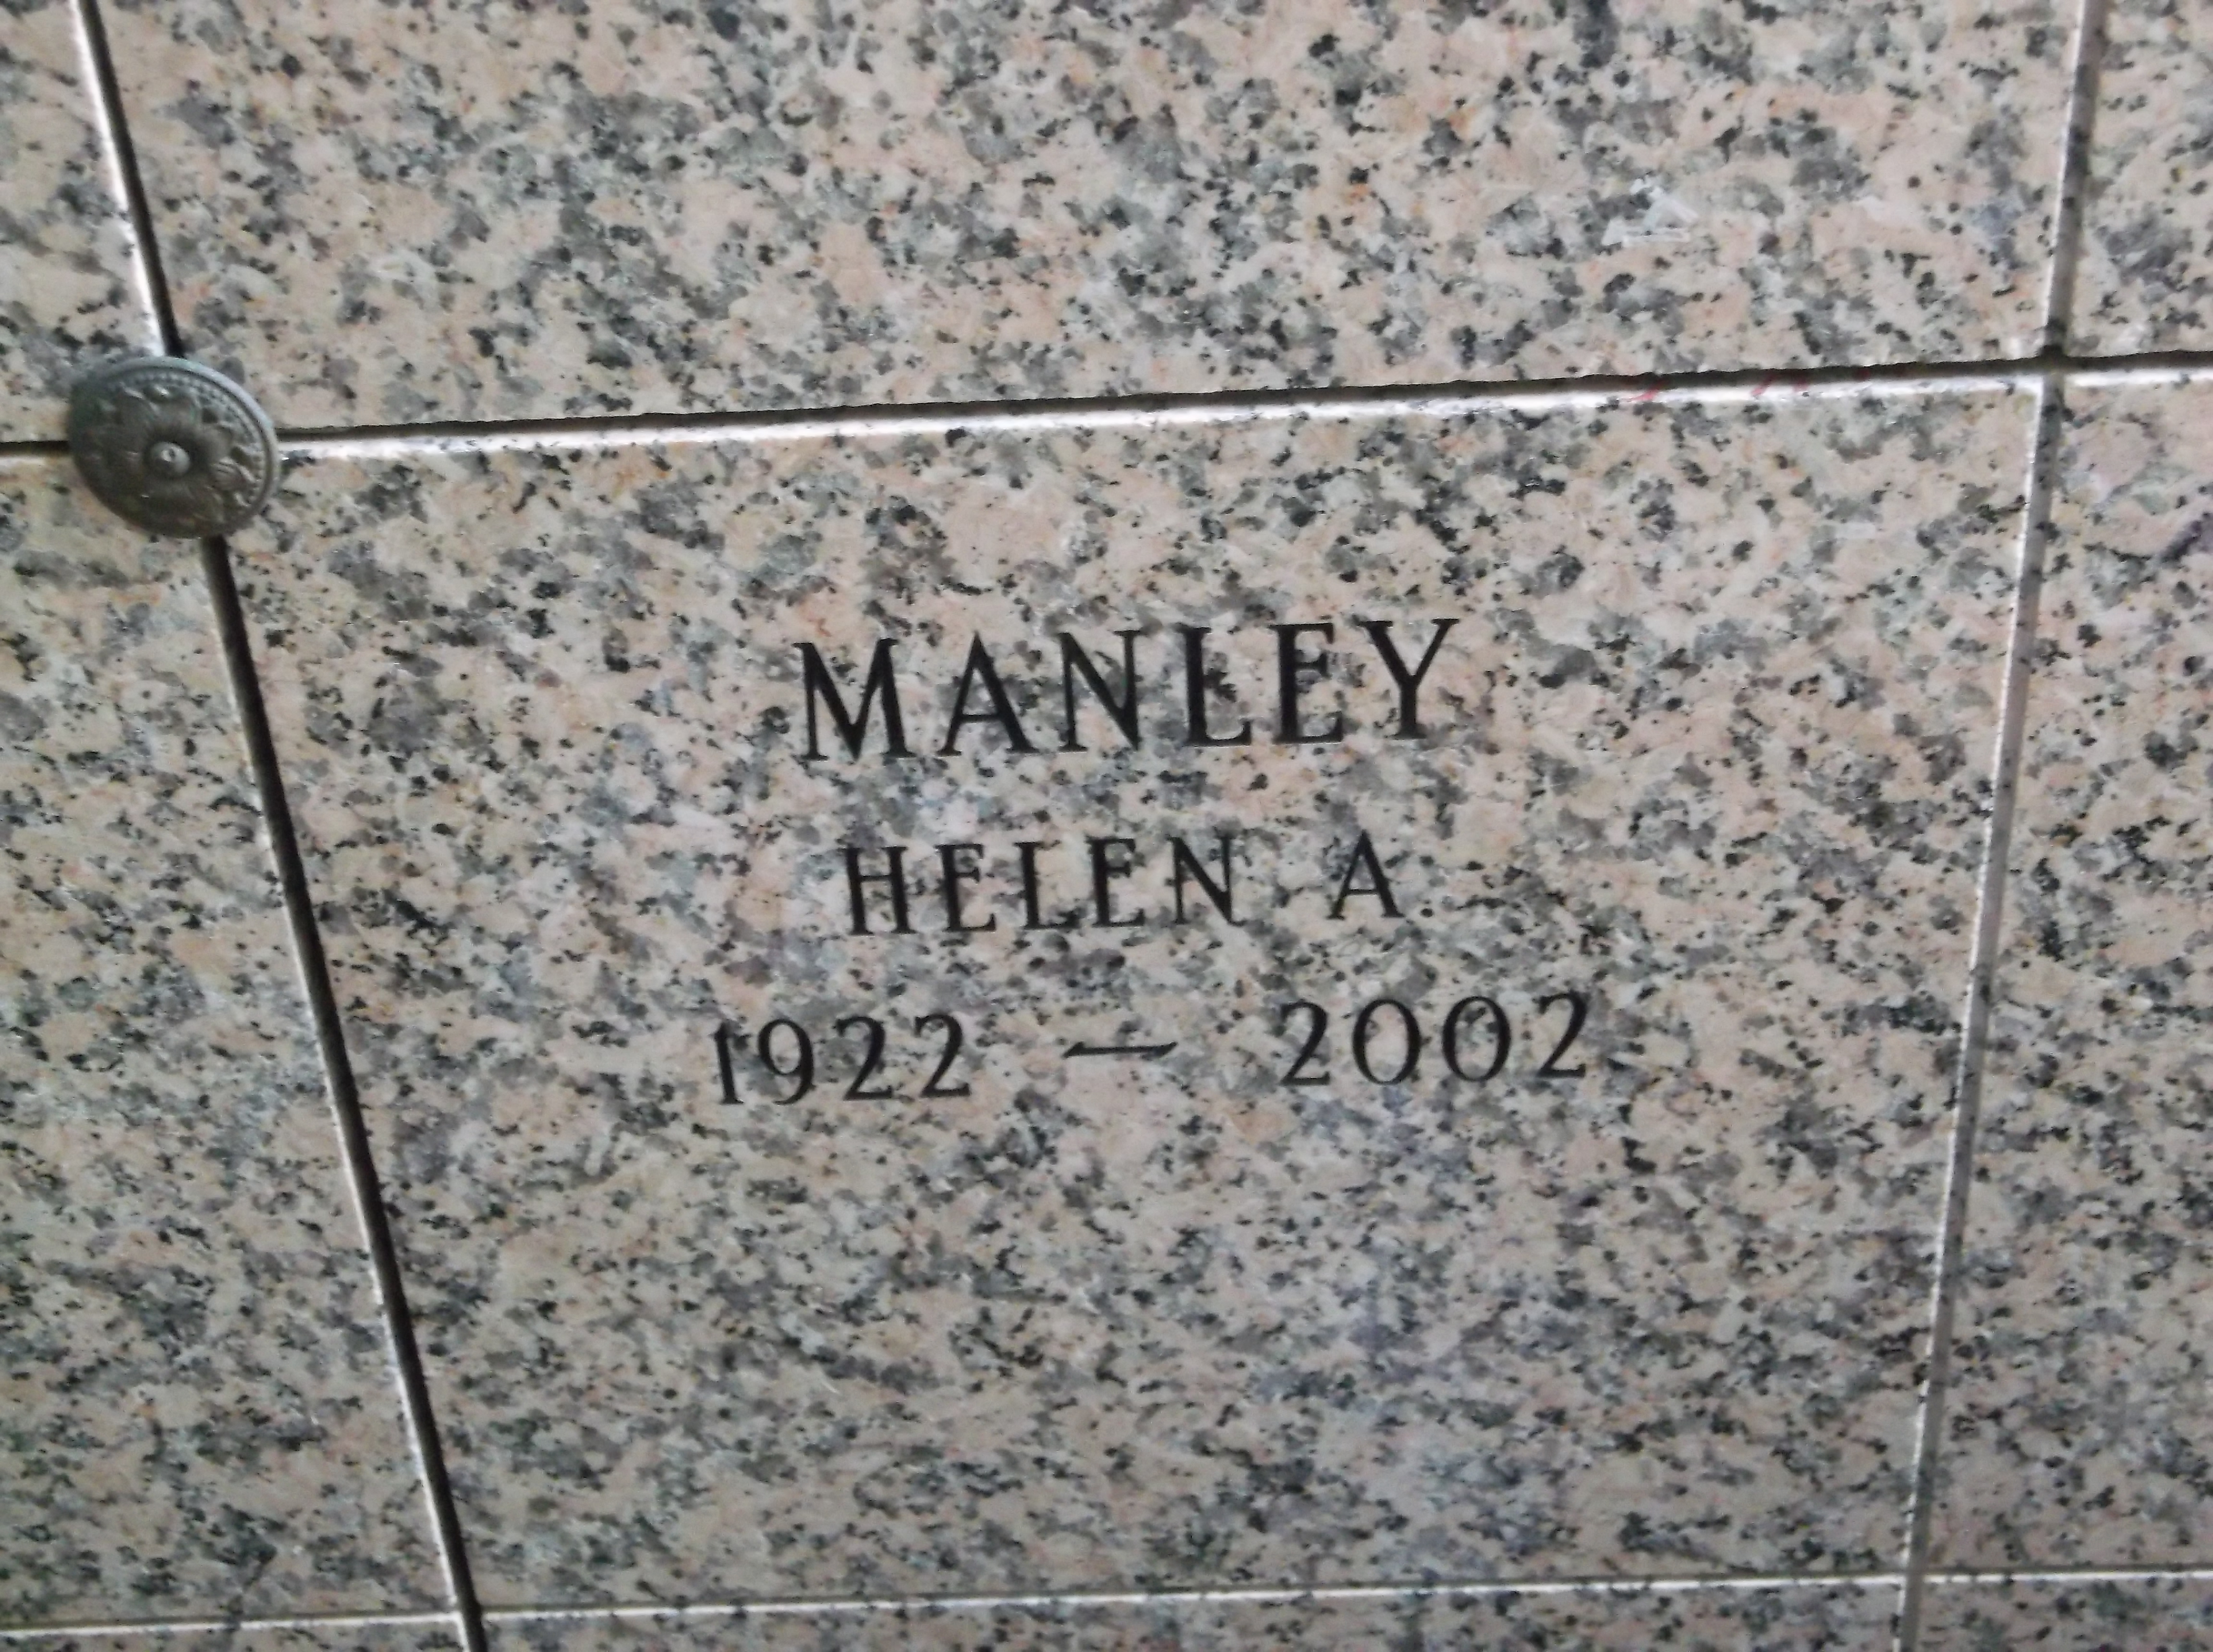 Helen A Manley